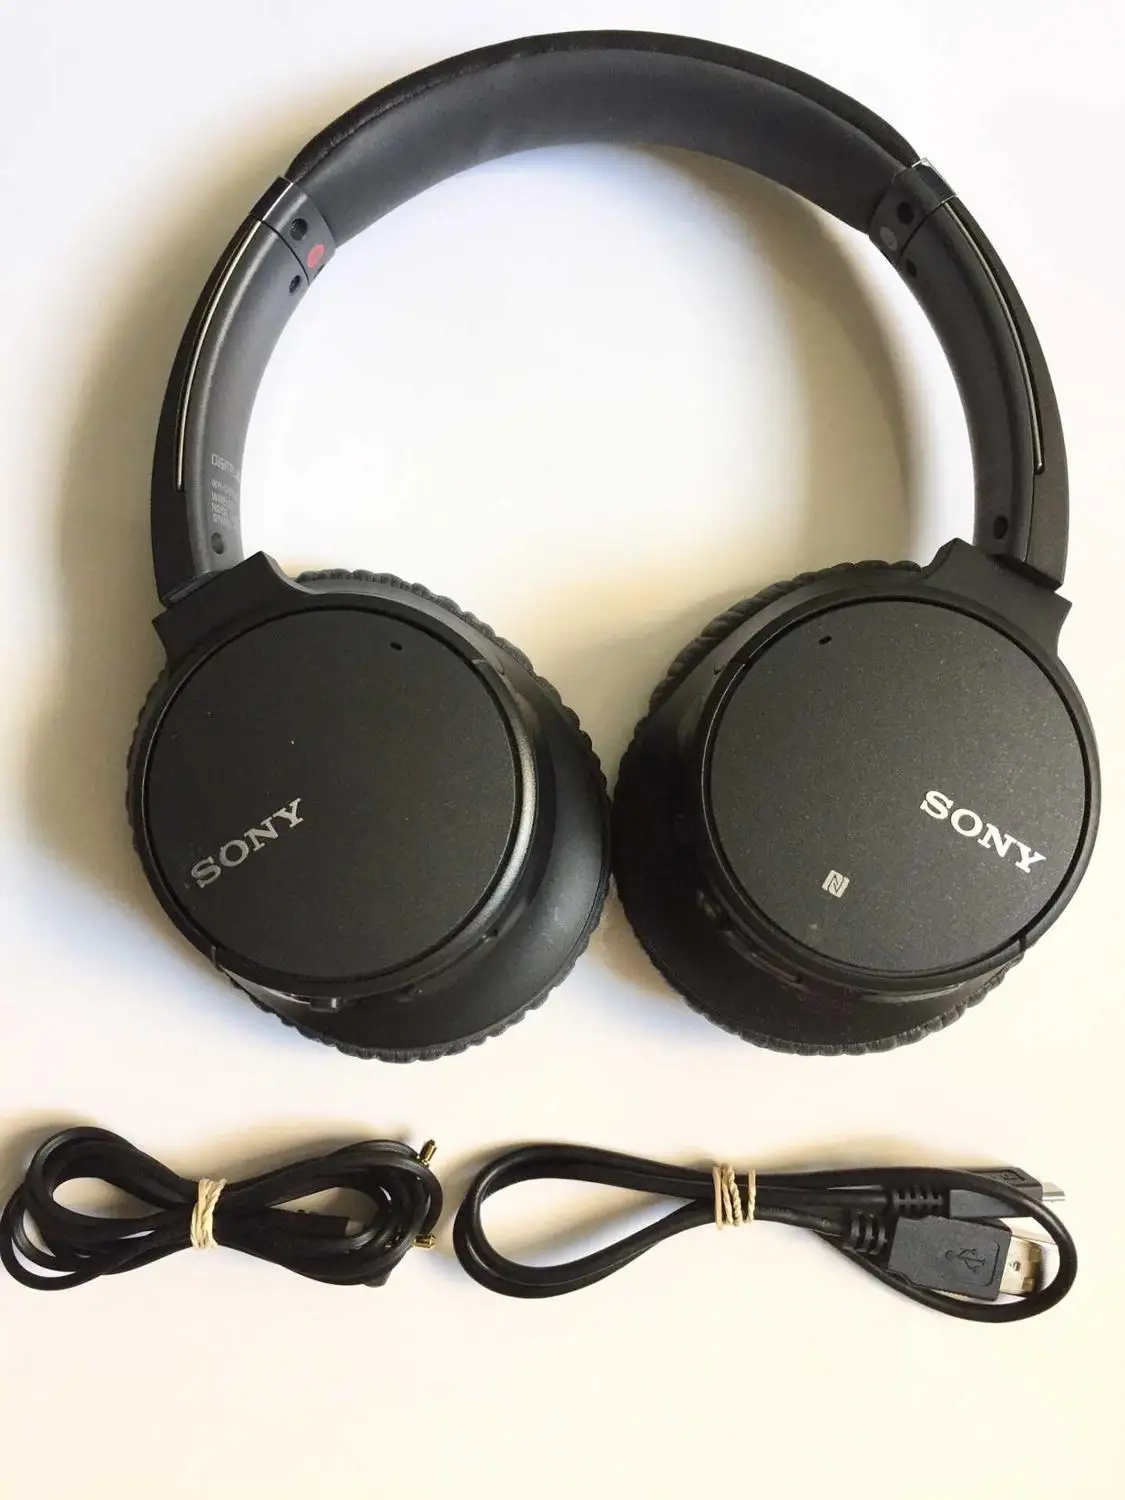 UTILIZA SONY CH700N Inalámbrica Bluetooth Auriculares con Cancelación de Ruido - WH-CH700N 98%nuevo 3